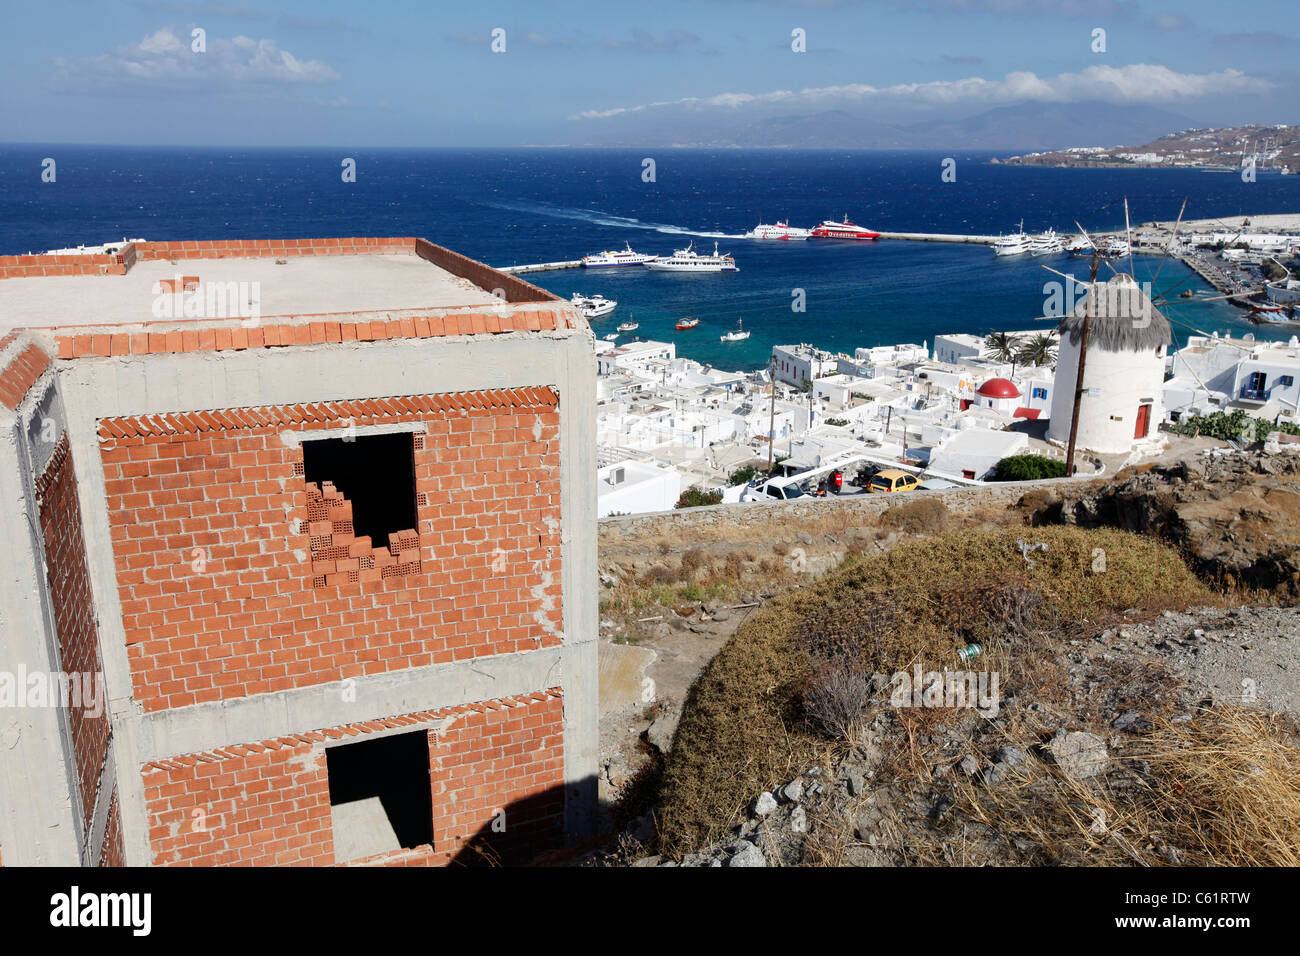 Des bâtiments inachevés, des maisons au-dessus de la vieille ville de Mykonos, Grèce, Europe. Banque D'Images